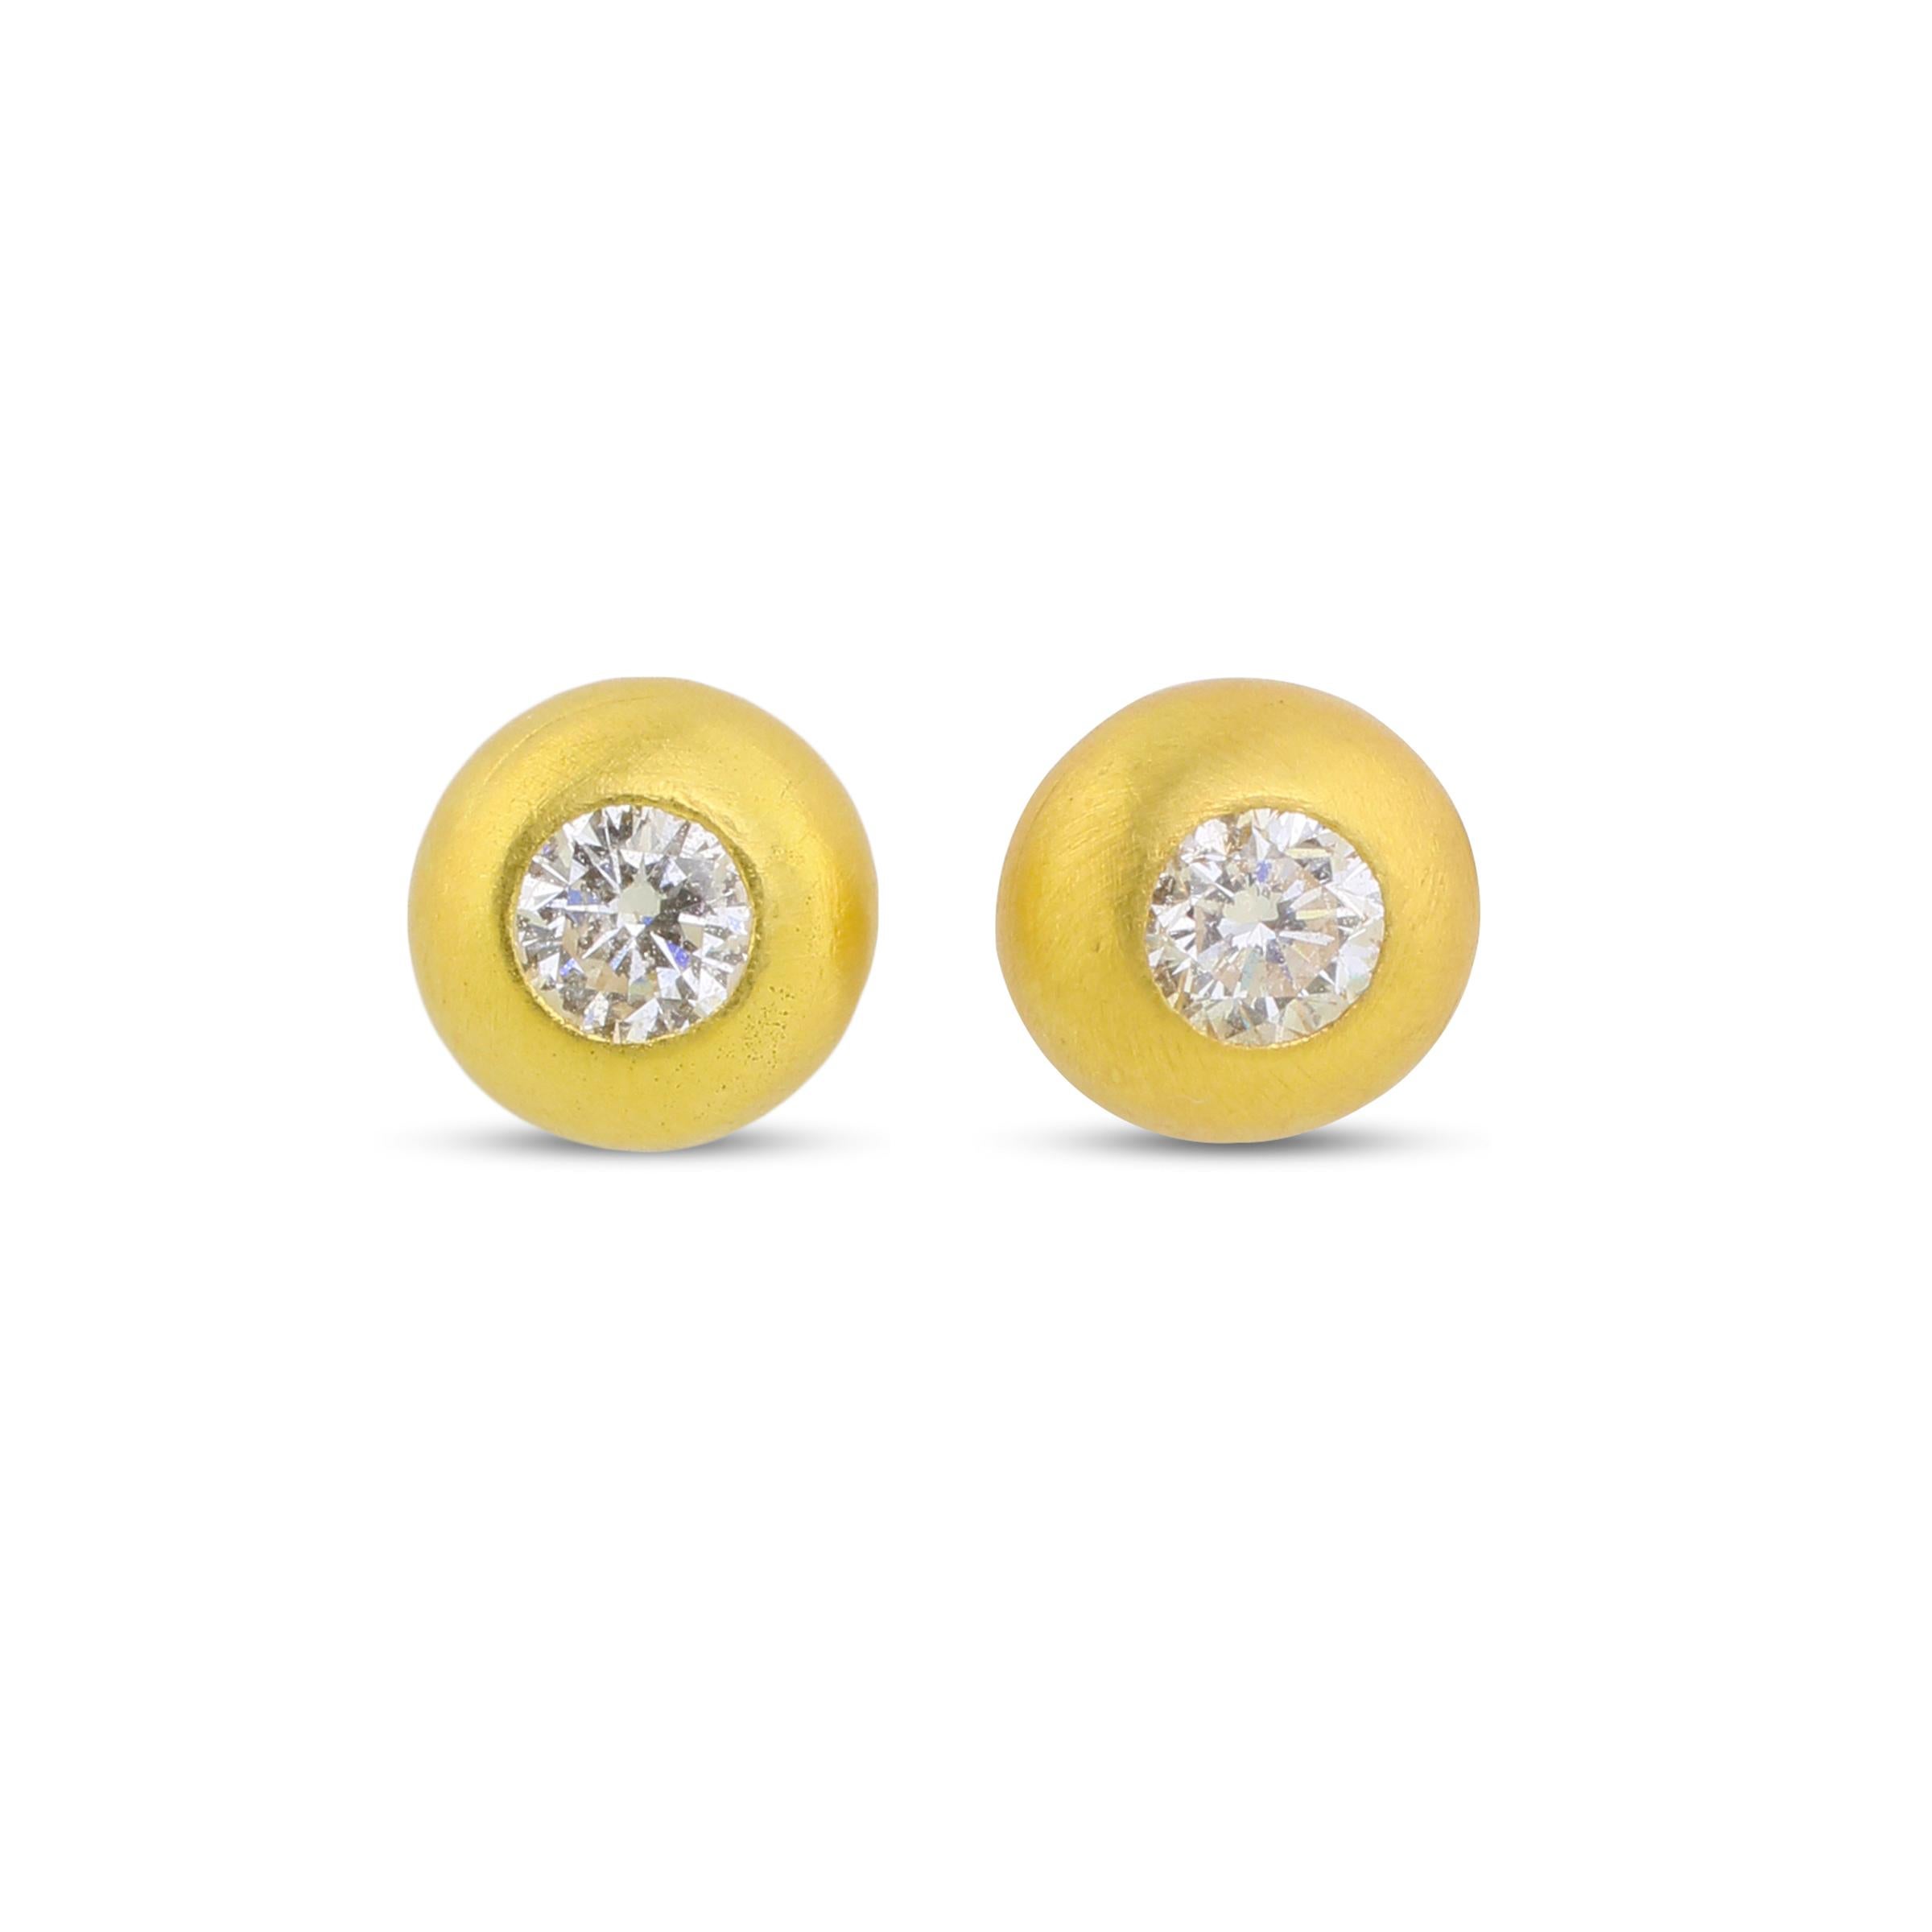 20k gold earrings